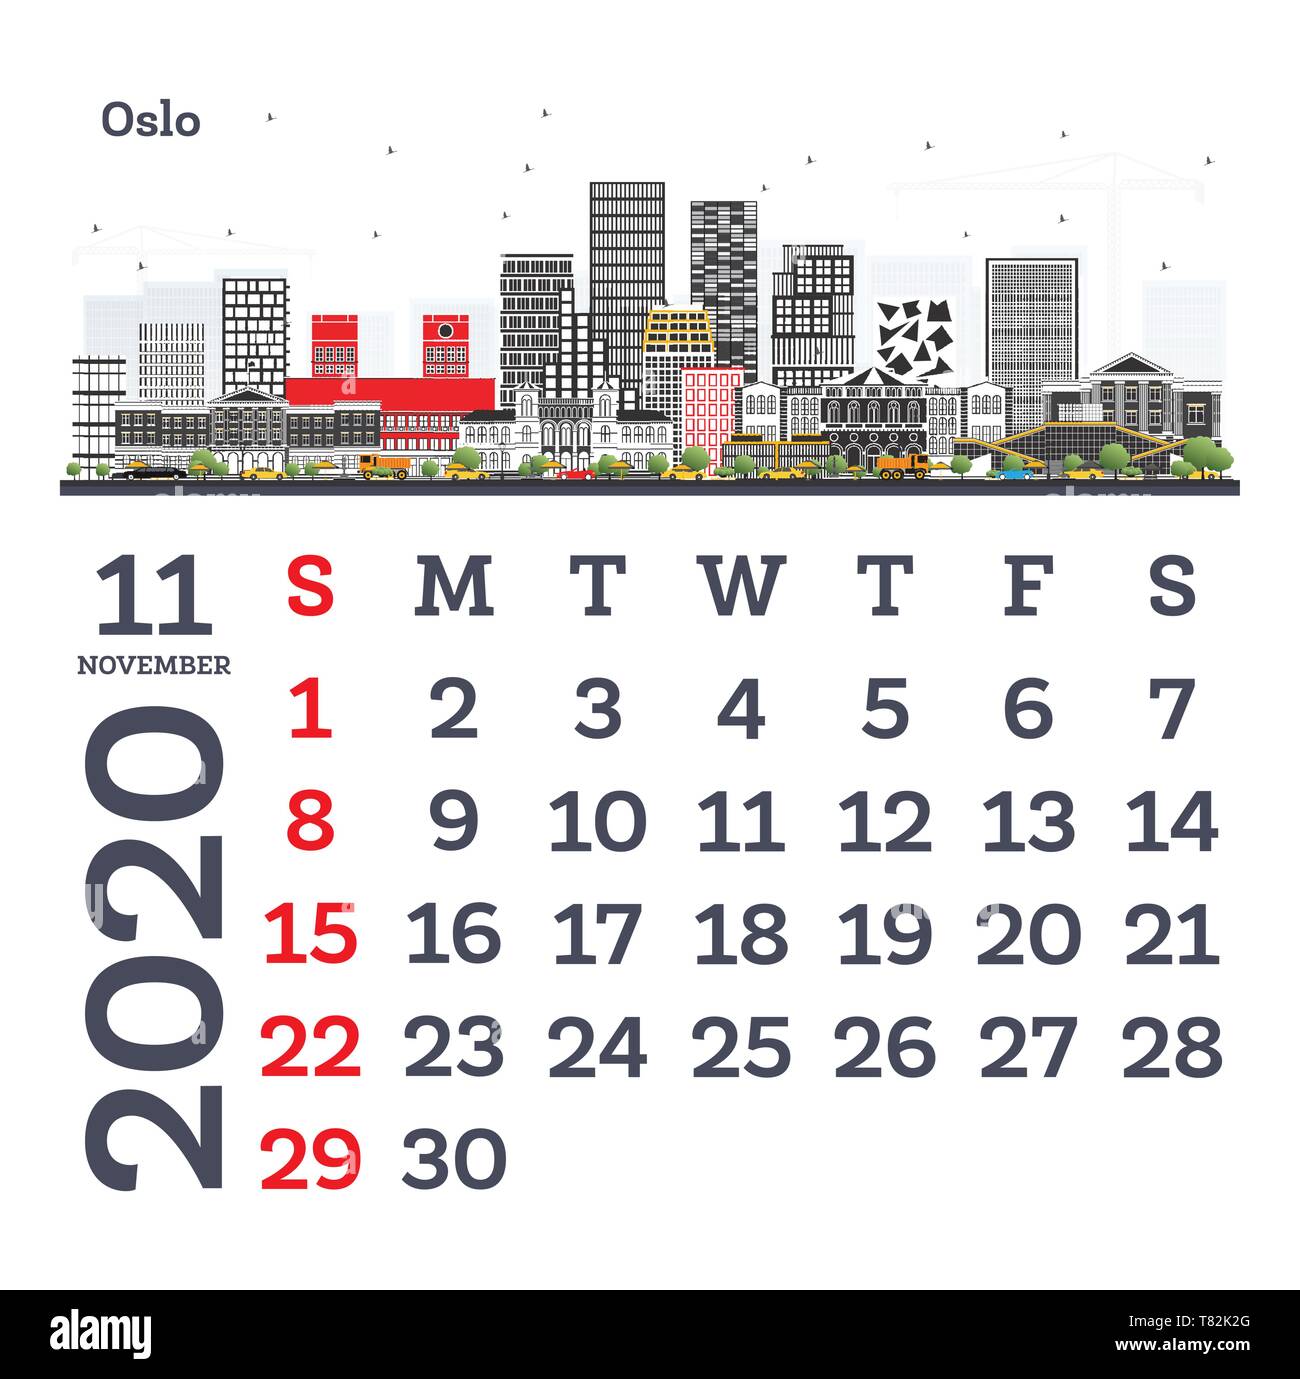 November 2020 Vorlage Kalender mit Oslo City Skyline. Vector Illustration. Vorlage für Drucken. Woche beginnt ab Sonntag. Stock Vektor